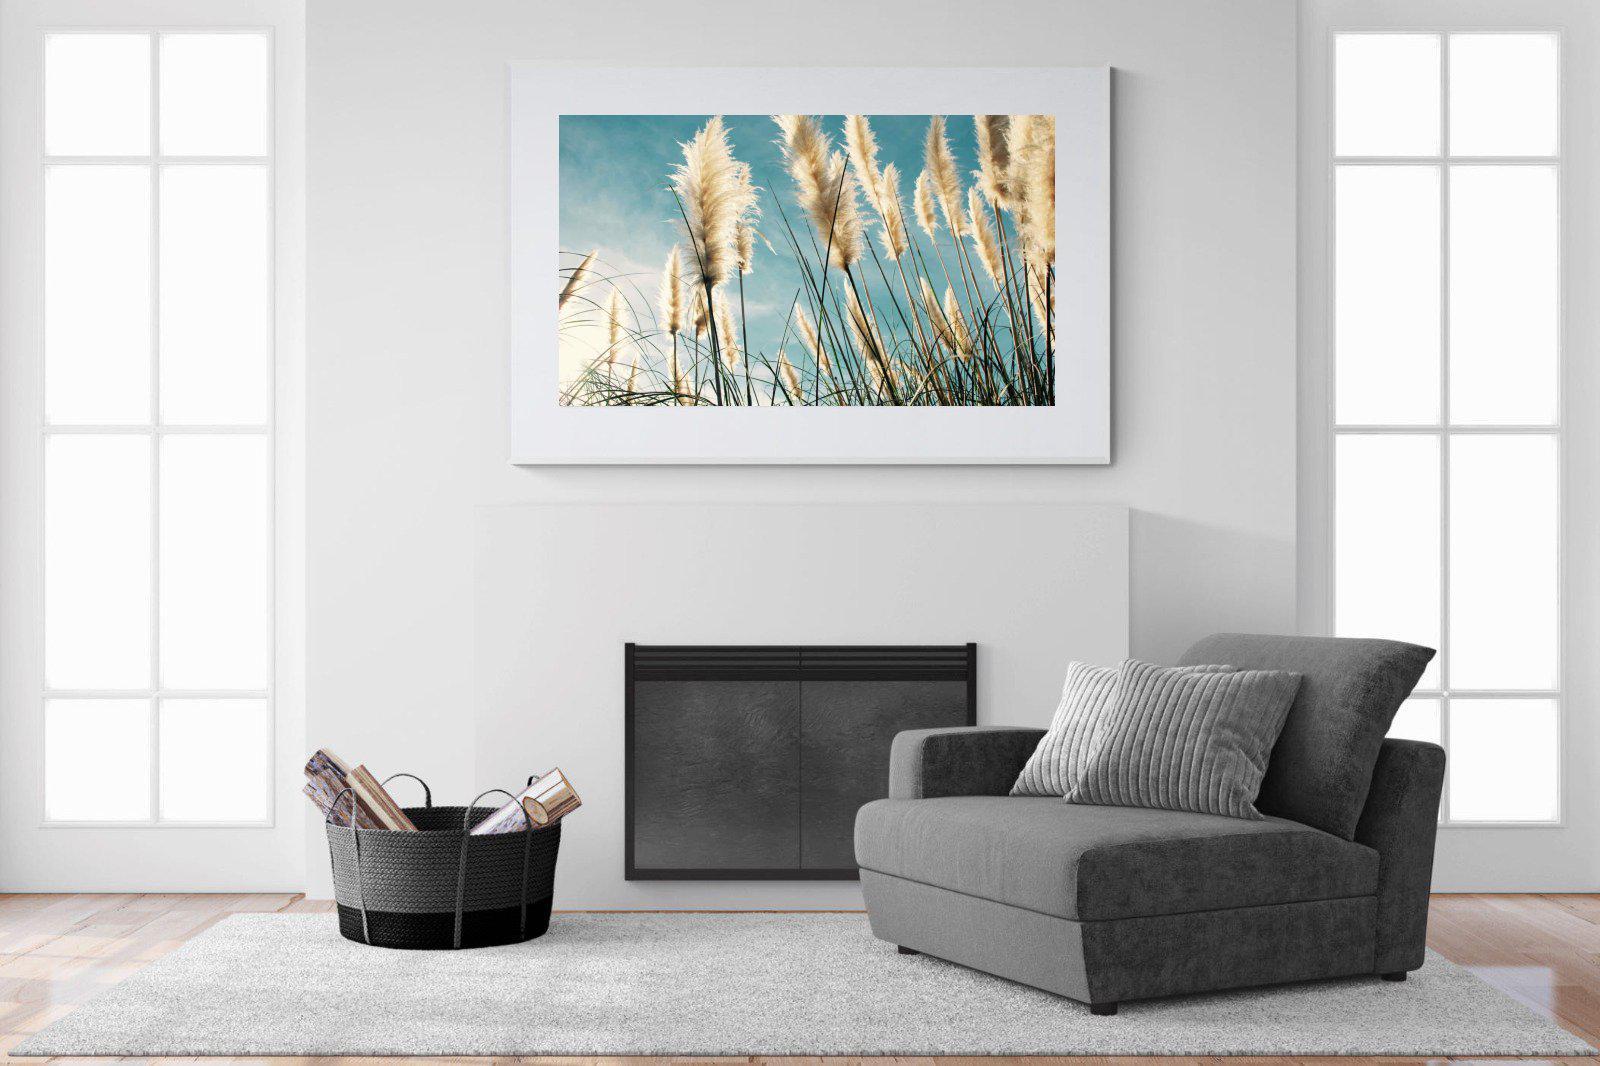 Toitoi-Wall_Art-150 x 100cm-Framed Print-White-Pixalot